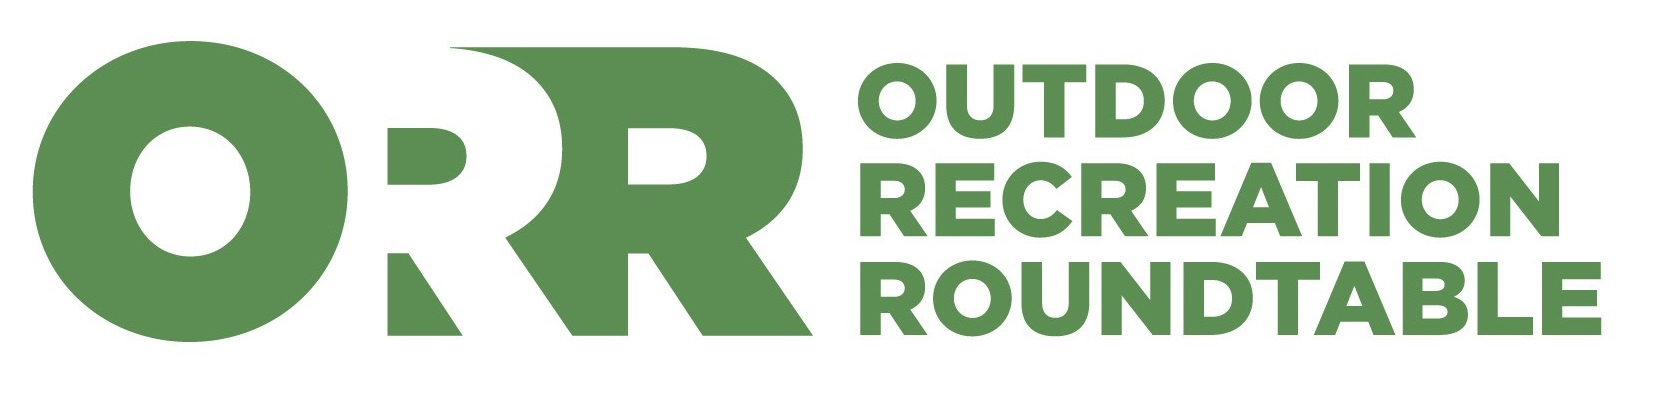 Outdoor Industry Association logo